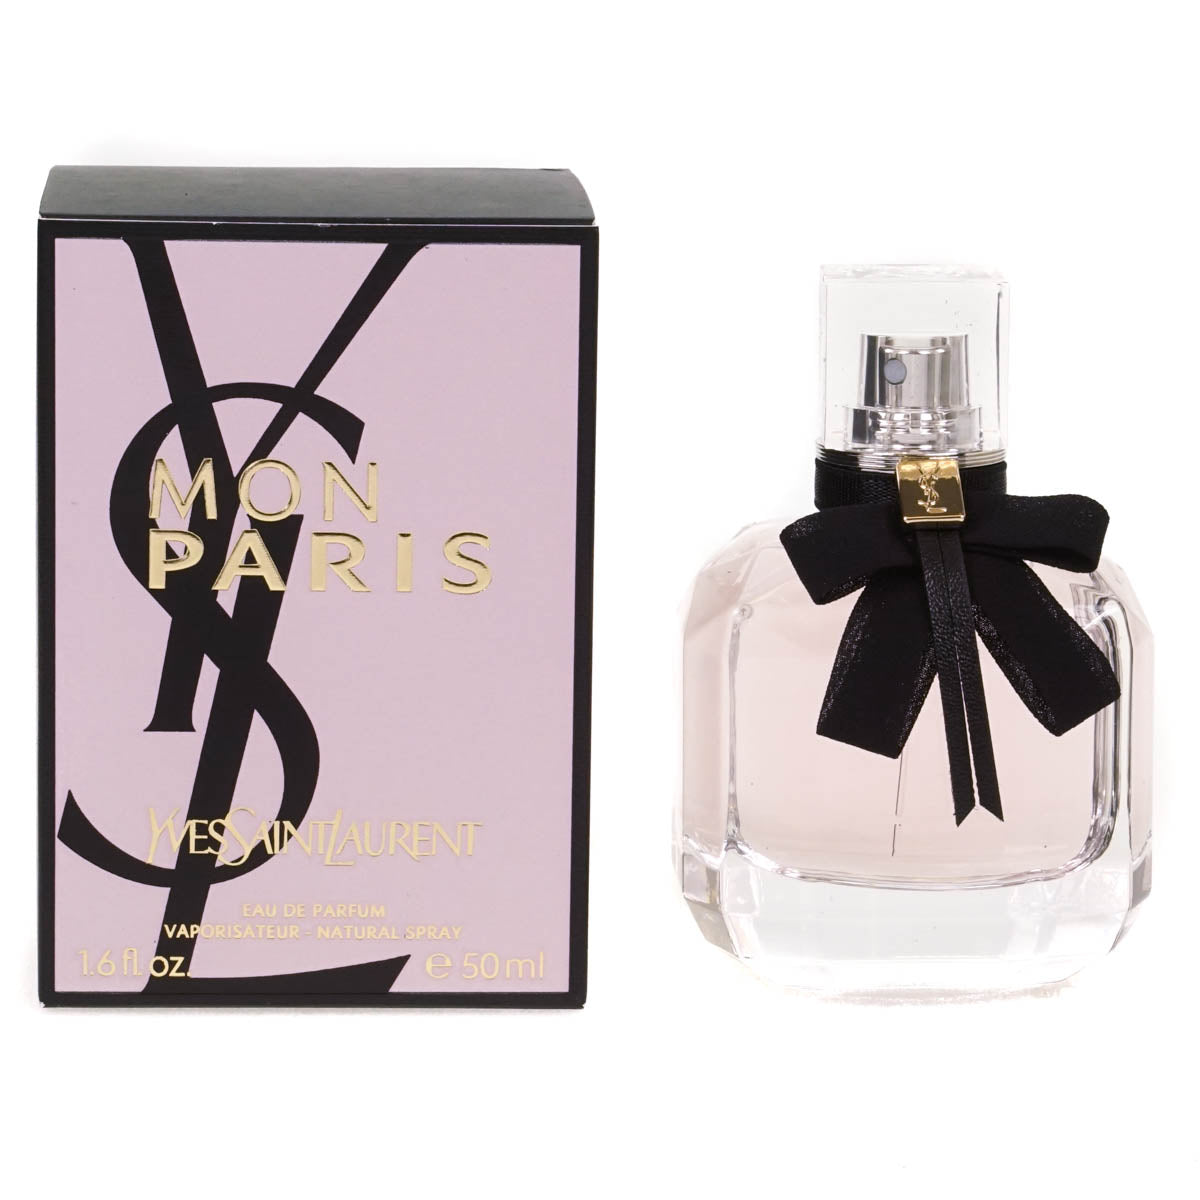 Yves Saint Laurent Mon Paris 50ml Eau De Parfum